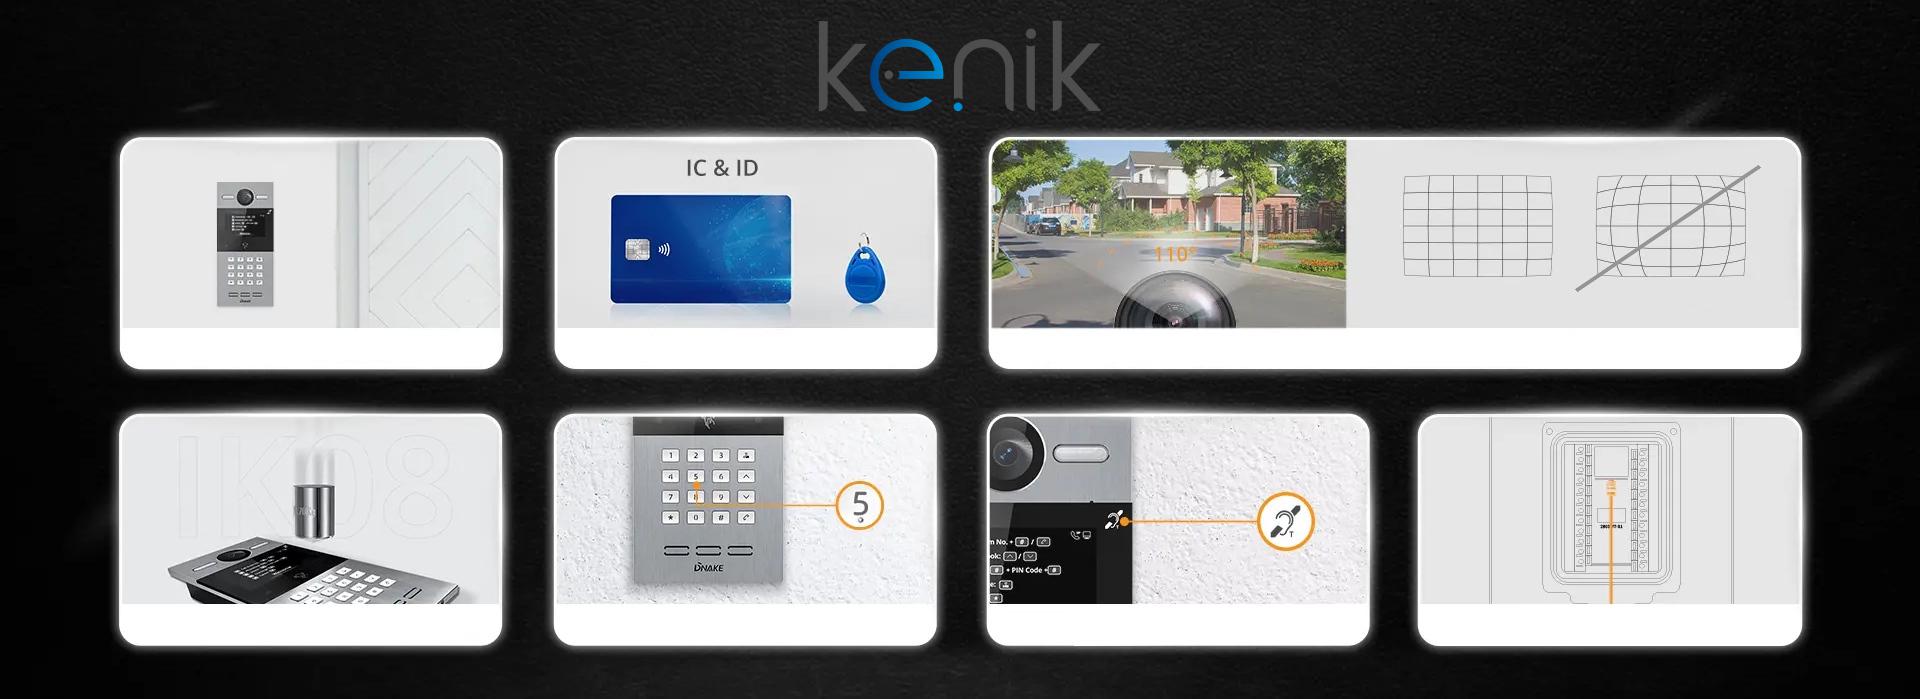 Panel bramowy wideodomofonu IP KENIK KG-S30KRD-P - podsumowanie cech, zalet i możliwości urządzenia do kontroli dostępu: